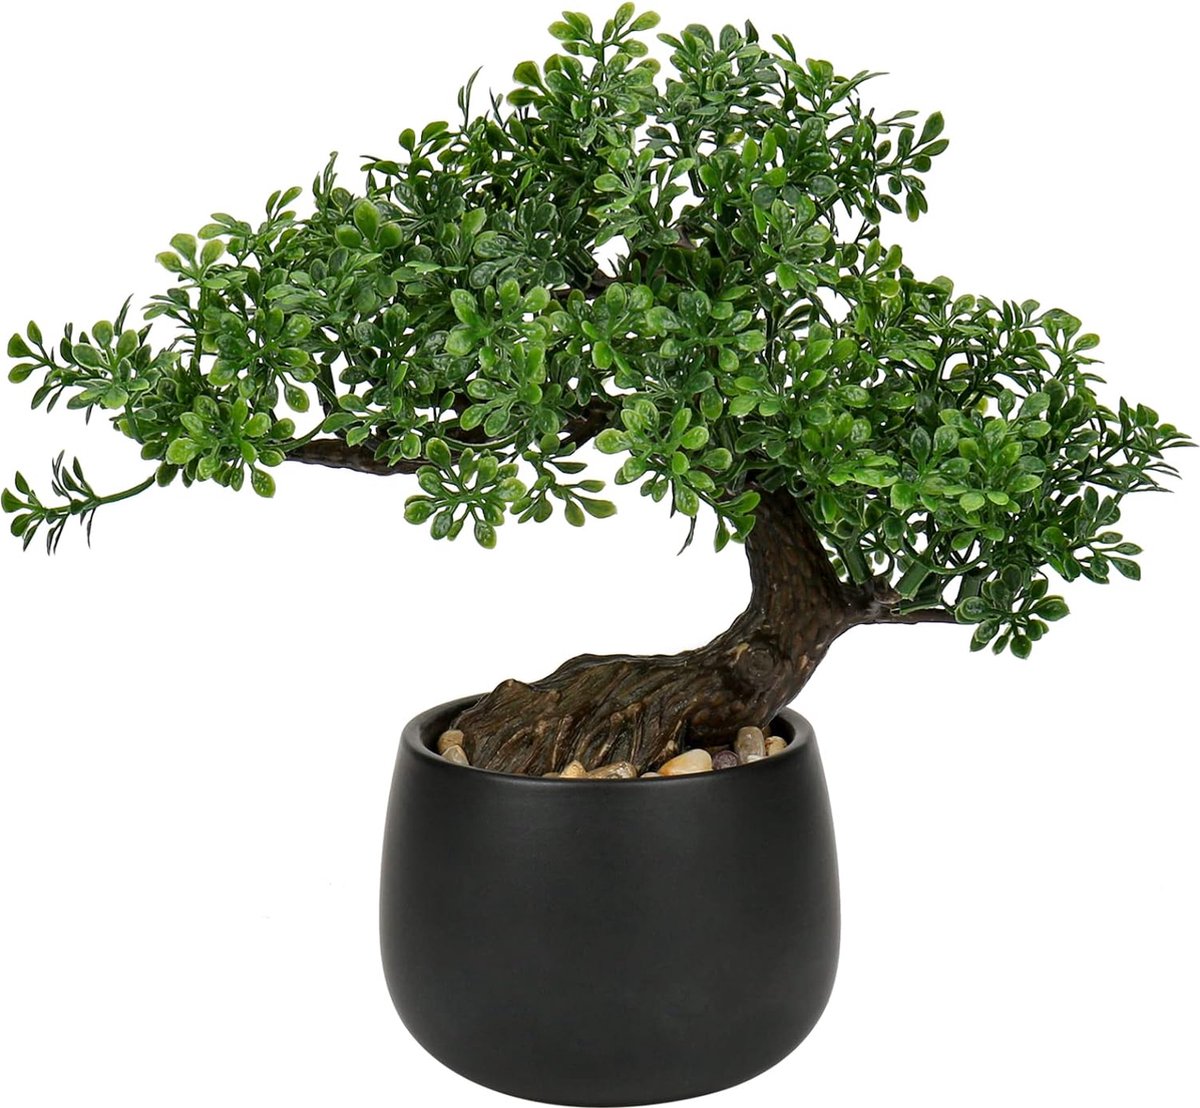 25 cm kunstplant bonsai boom in keramische pot kunstmatige planten esthetische Japanse bonsai decoratie voor woonkamer slaapkamer badkamer vensterbank decoratie Podocarpus kunstbonsai